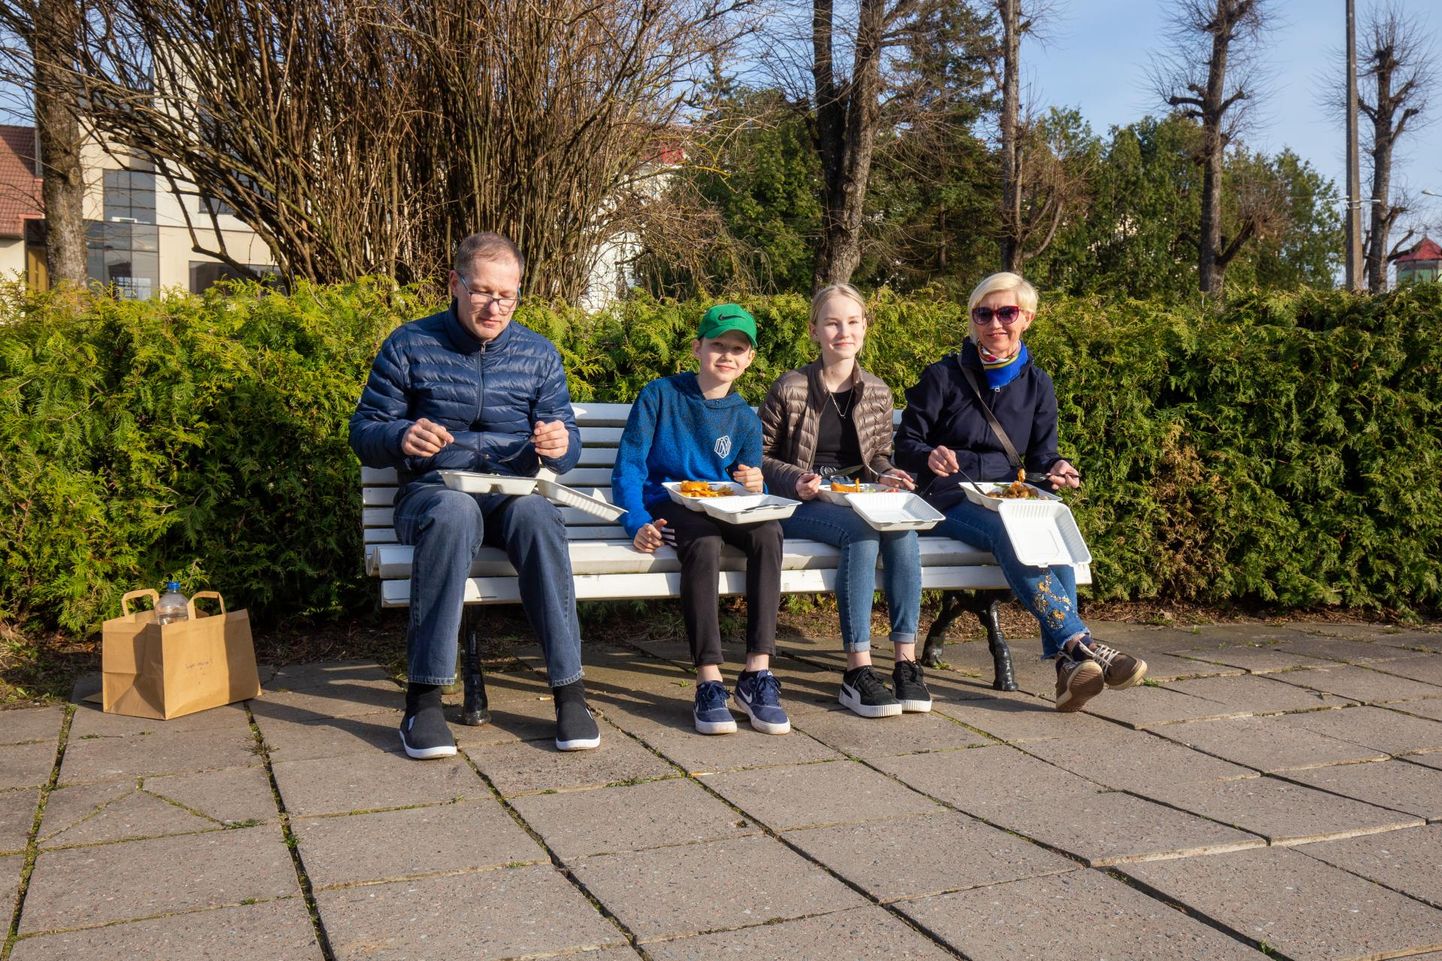 Põltsamaalt pärit perekond istus õhtupäikeses pargipingil, sest väliterrassid on kinni. Fotol on vasakult isa Jaanus Kesa, poeg Jaan Kesa, tütar Kärt Kesa ja ema Maris Raba.